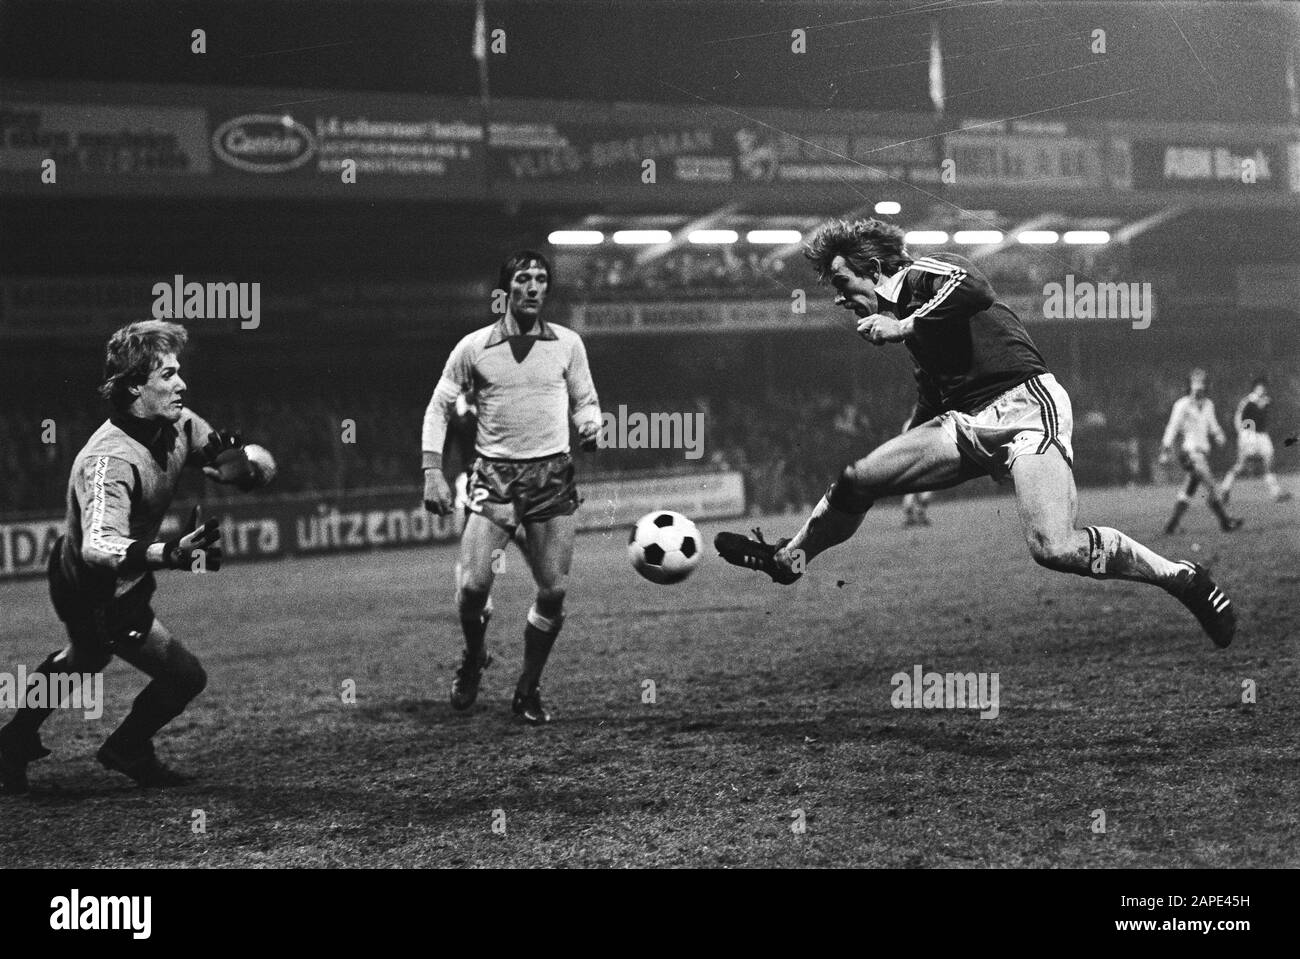 AZ 67 against FC Utrecht 2-0, (KNVB cup); Jaan de Graaf is going to score, goalkeeper van Breukelen, Utrecht player Wilbret Date: 13 February 1980 Location: Utrecht Keywords: sport, football Stock Photo